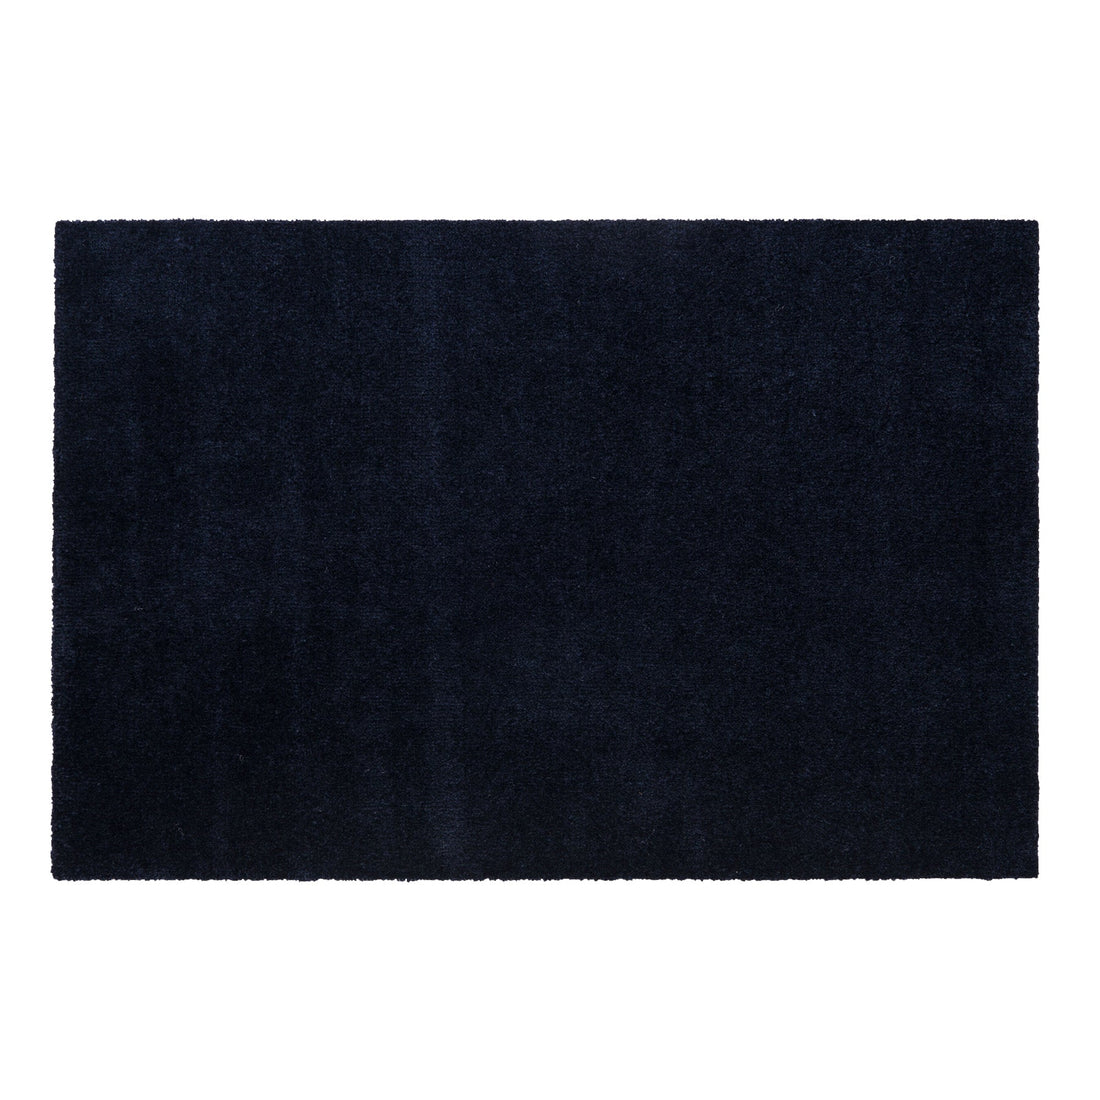 YELLOW MAT 60 x 90 cm - UNI COLOUR/BLUE